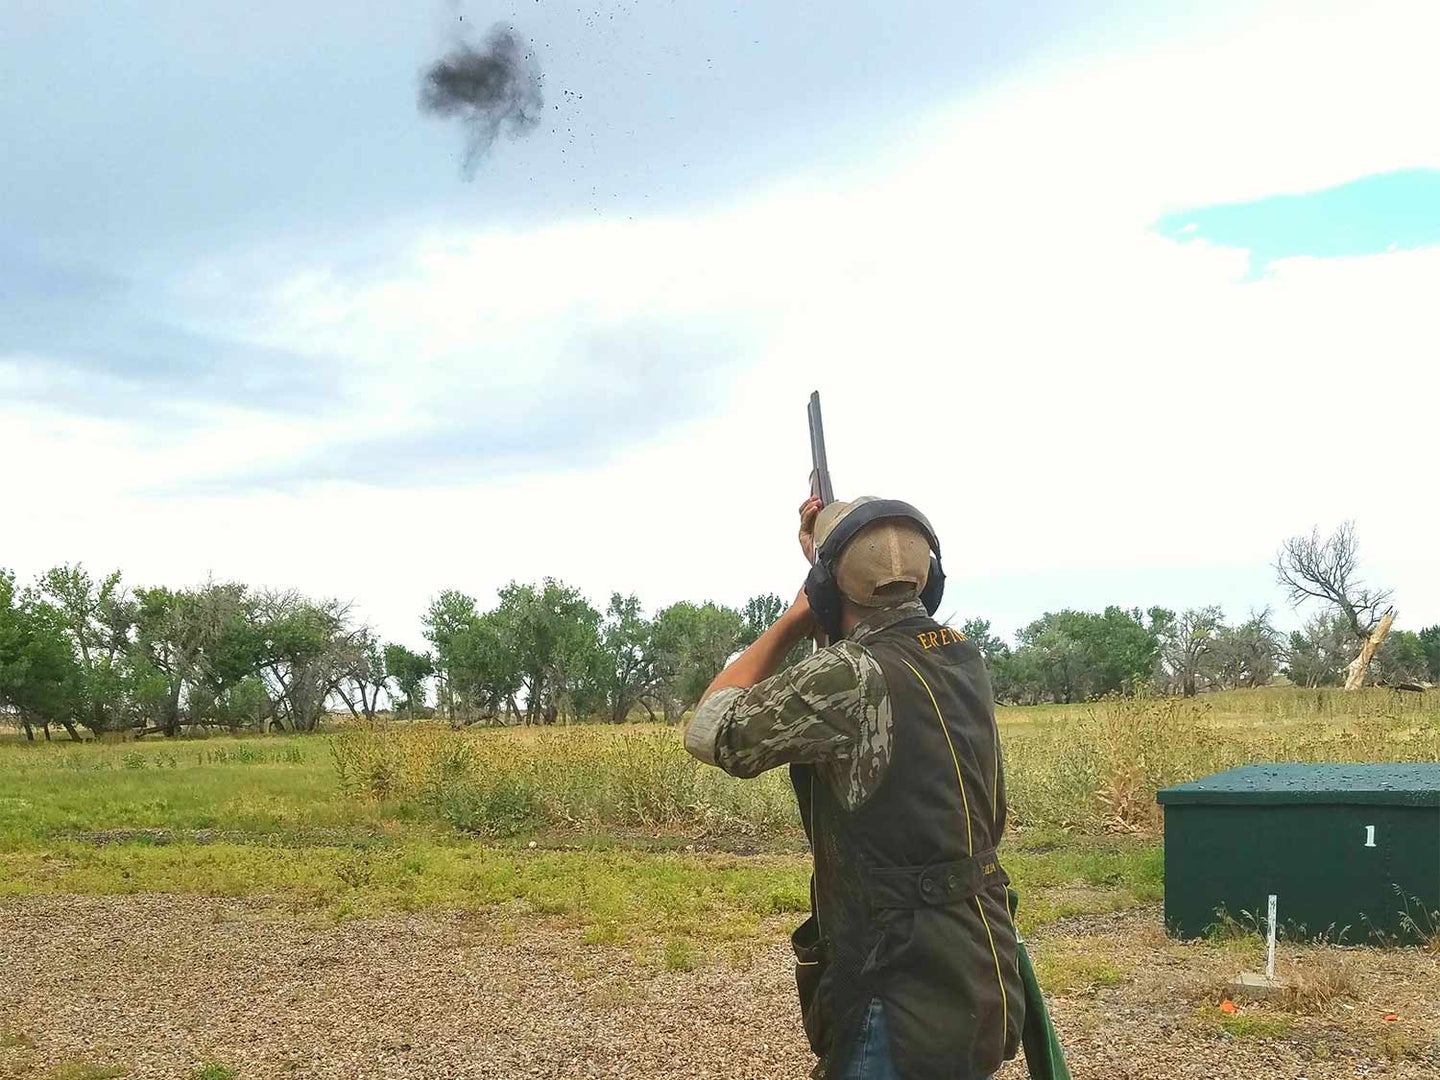 Man in a camo shooting skeet in a field.